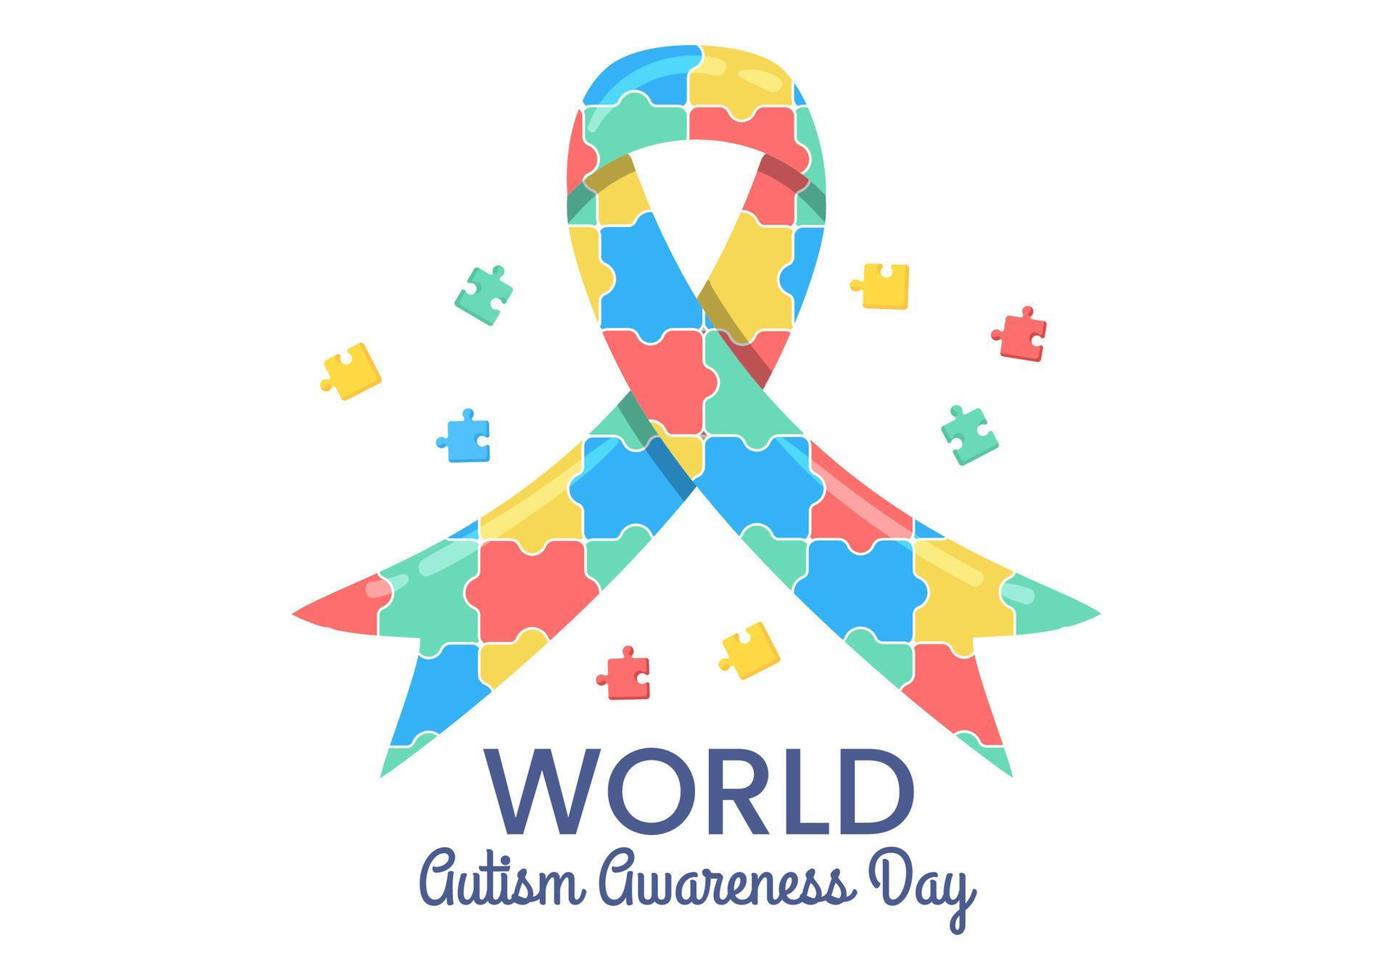 världsdagen för autismmedvetenhet med hand och pusselbitar lämpliga för gratulationskort, affisch och banderoll i platta designillustrationer vektor